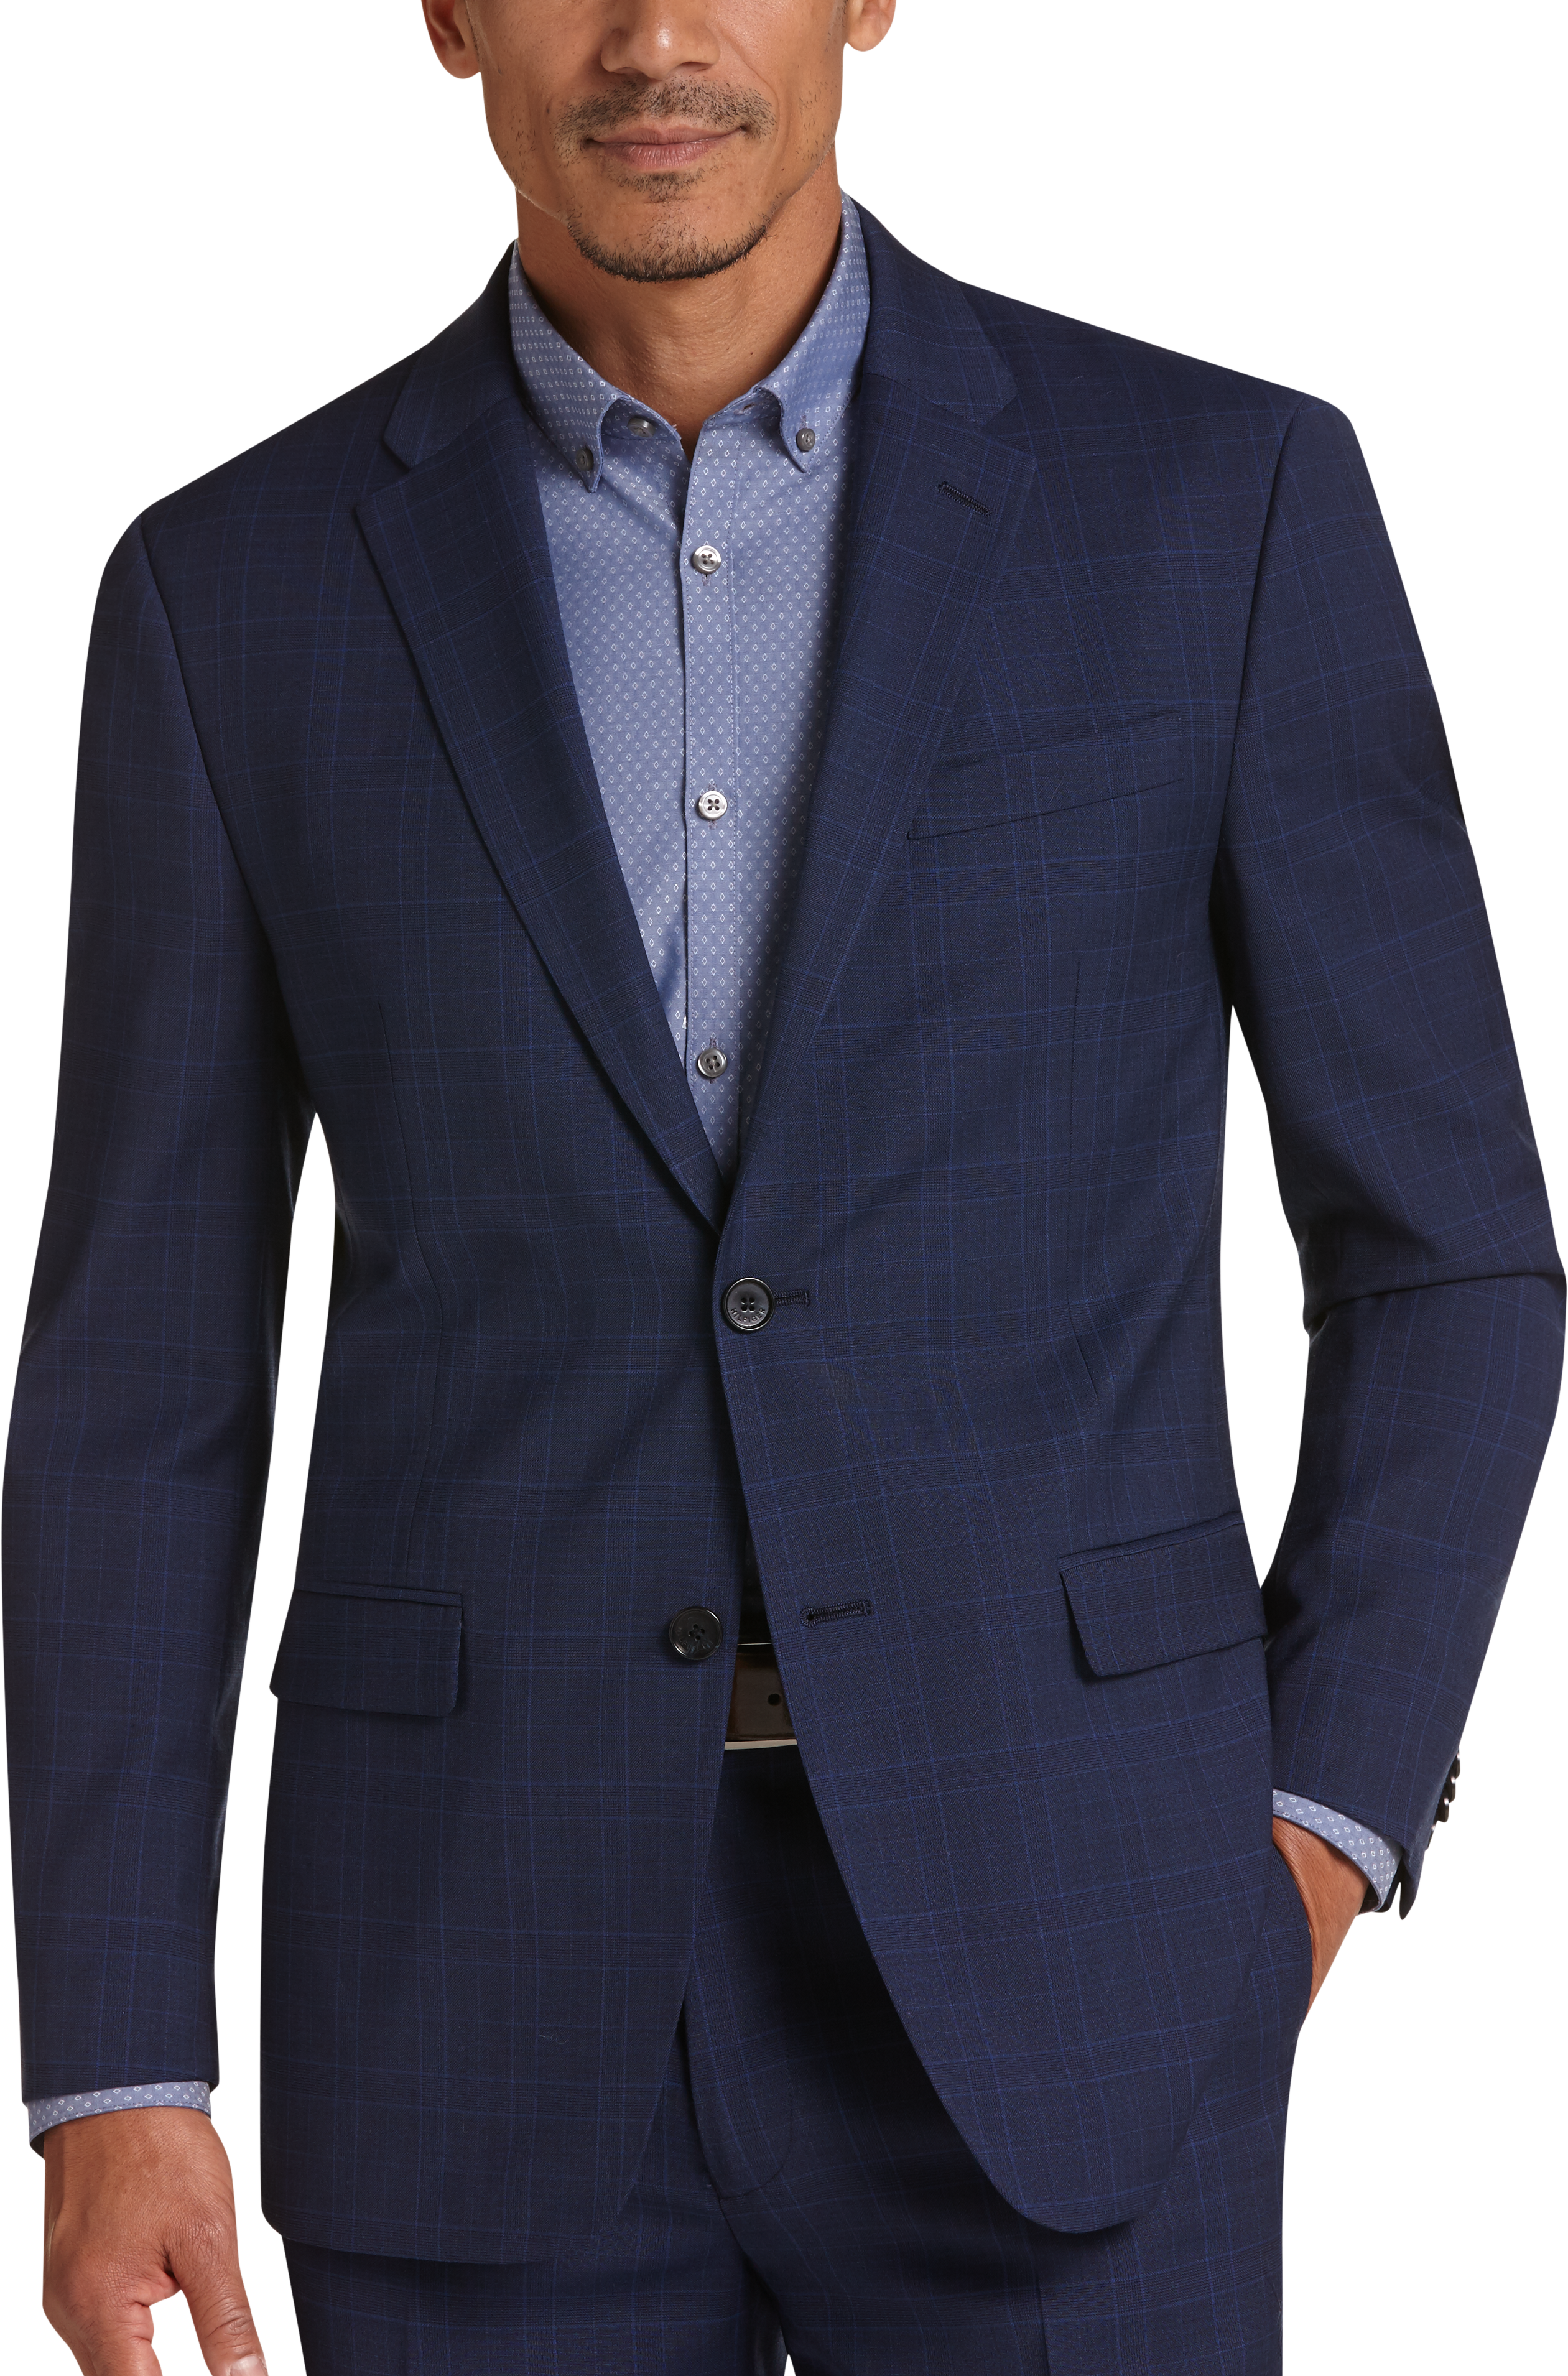 men's wearhouse tommy hilfiger blue suit